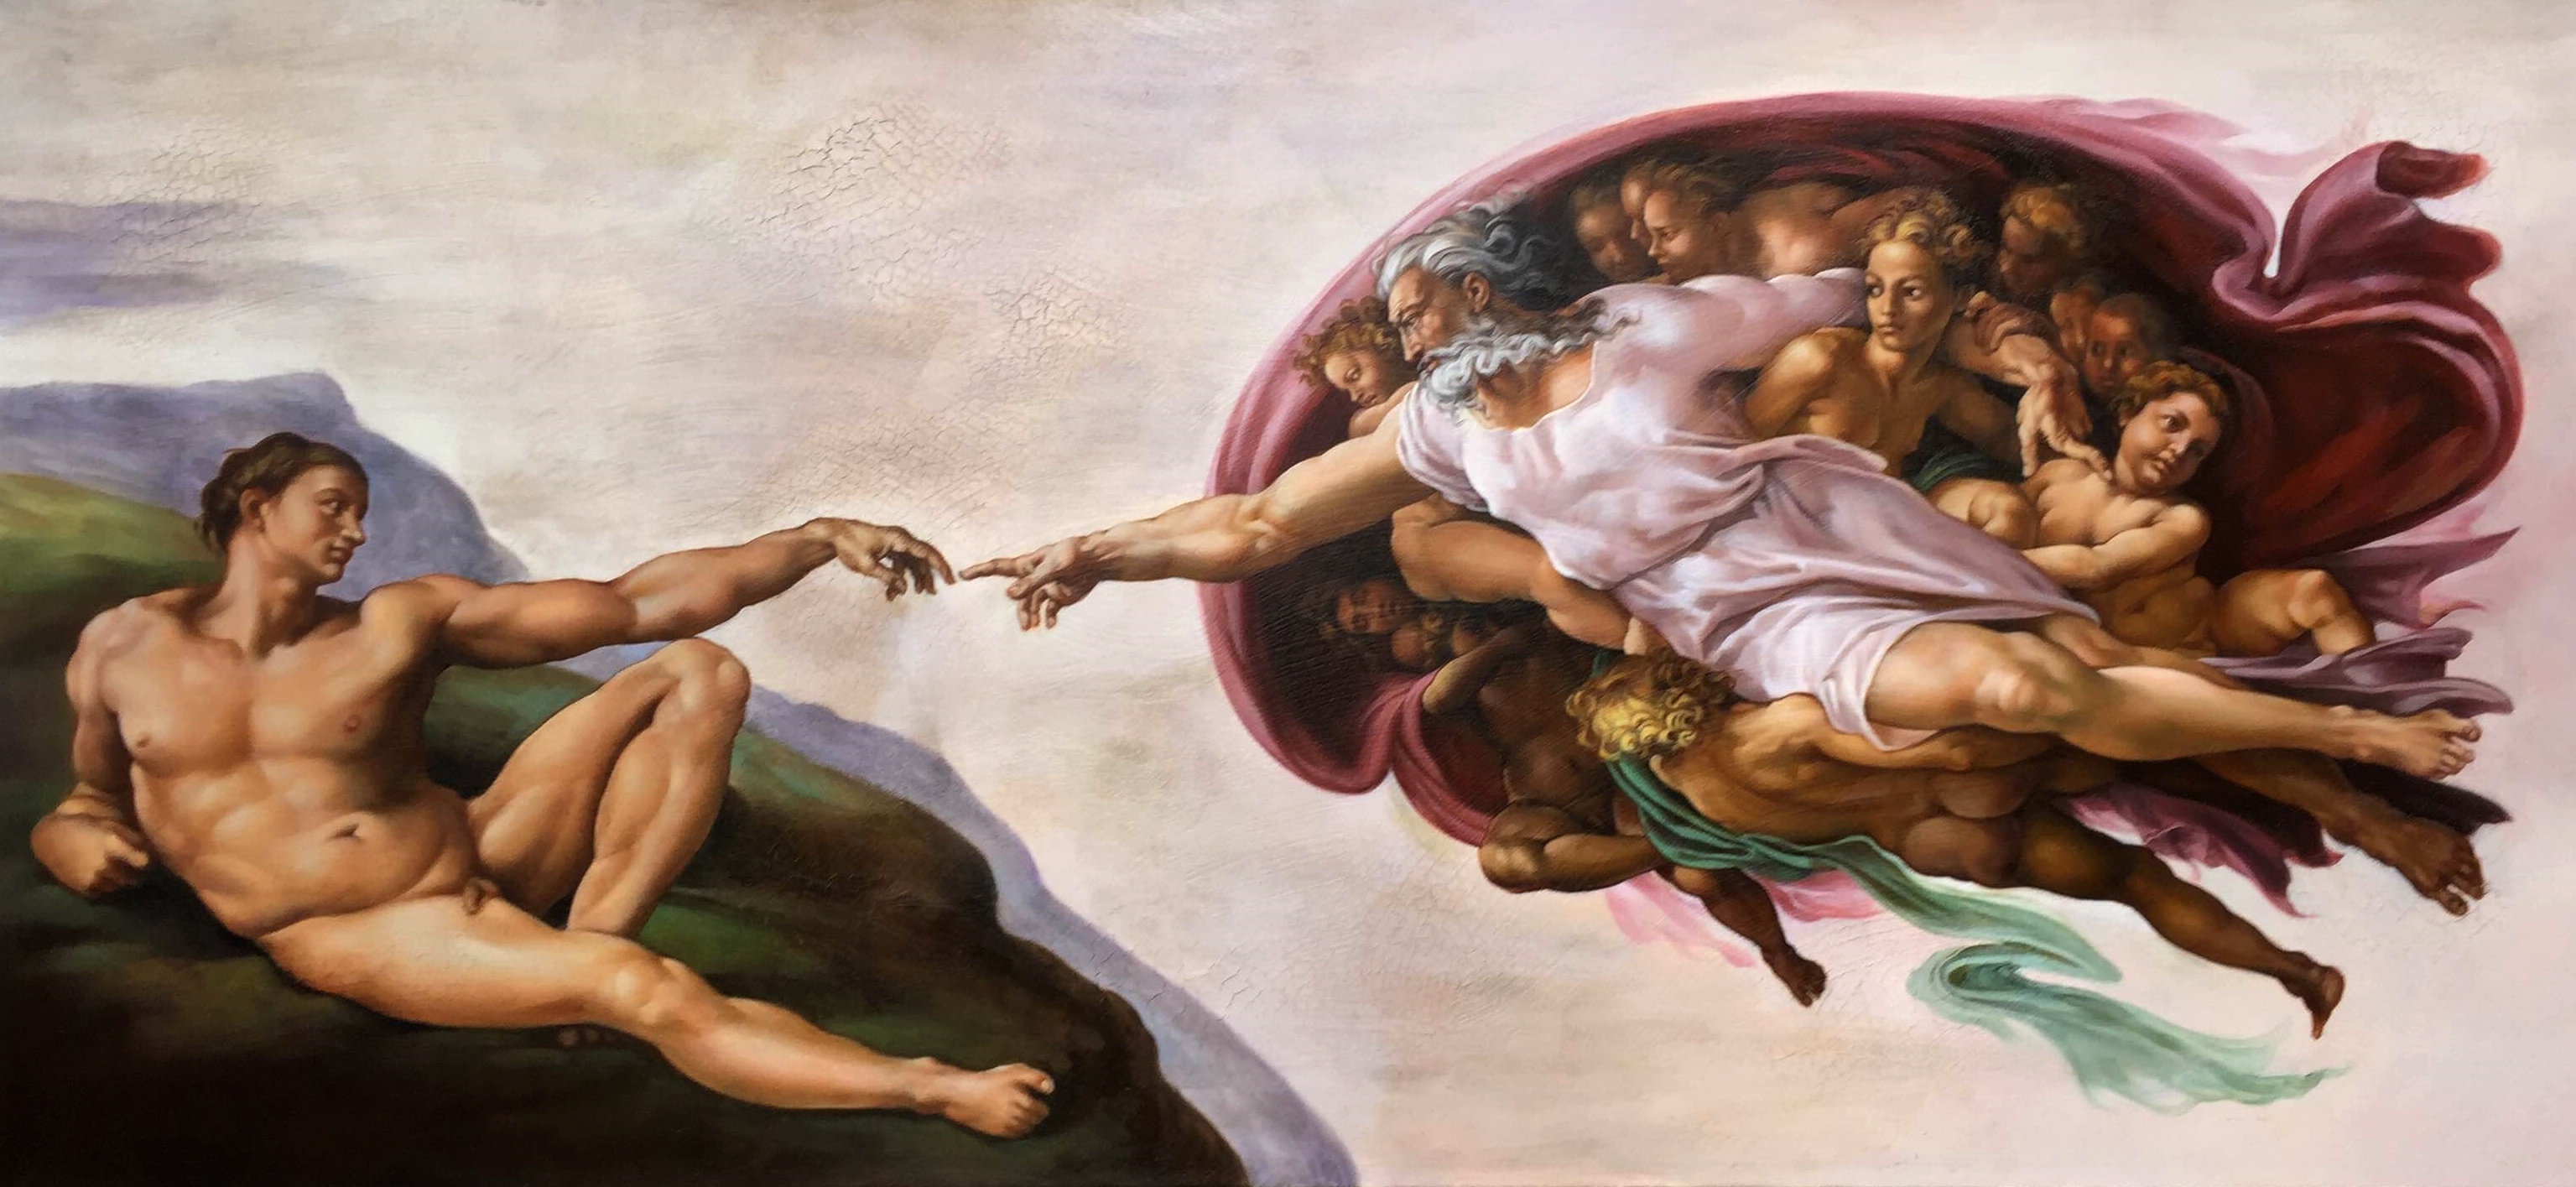 Человек соприкасается с искусством с самого рождения. Микеланджело Буонарроти Сотворение Адама. Микеланджело Буонарроти, «Сотворение Адама» (1511-1512). Микеланджело Буонарроти рождение Адама. "Сотворение Адама" Микеланджело, 1511.